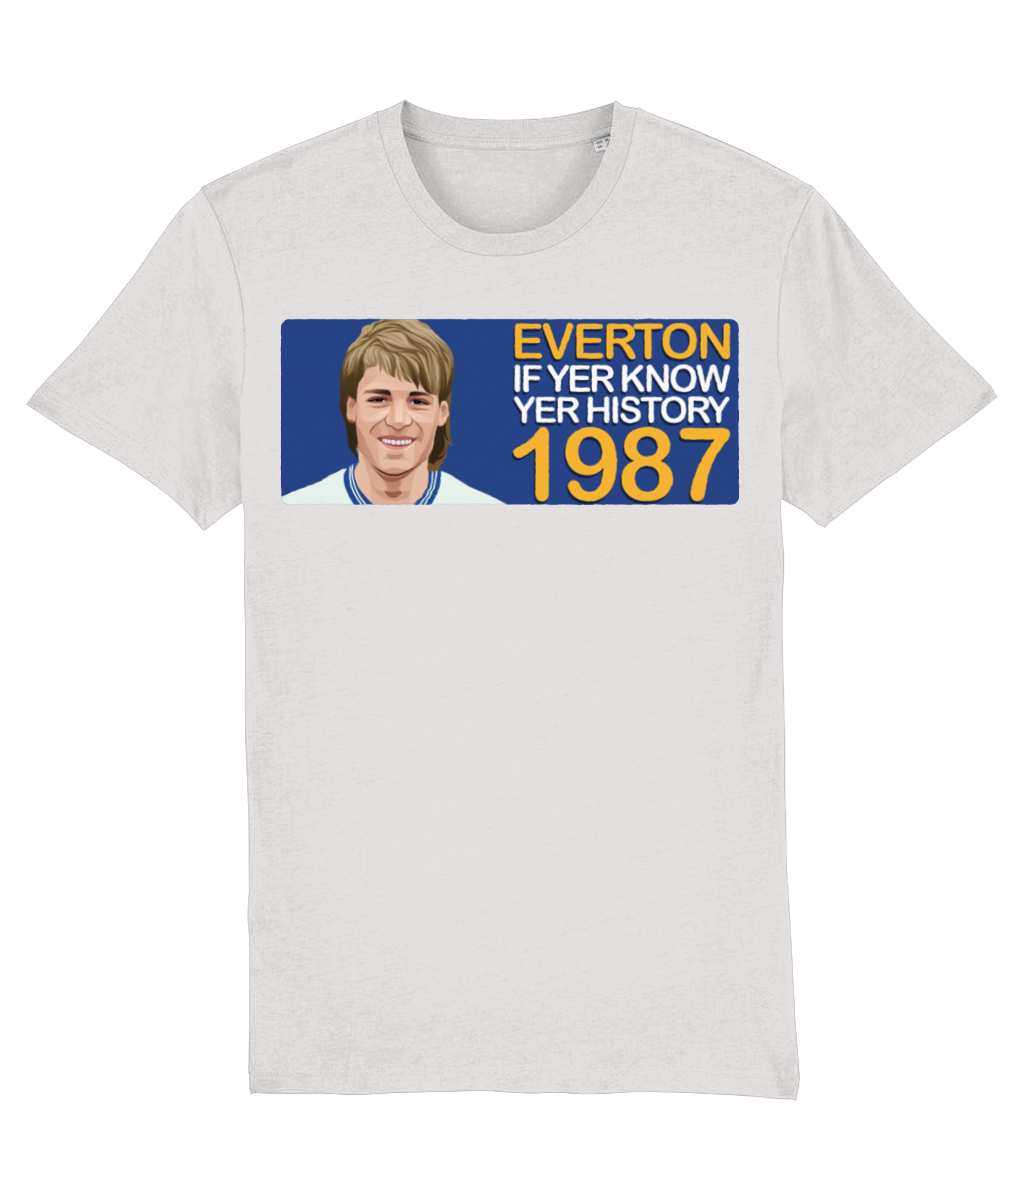 Everton 1987 Pat van den Hauwe If Yer Know Yer History Unisex T-Shirt